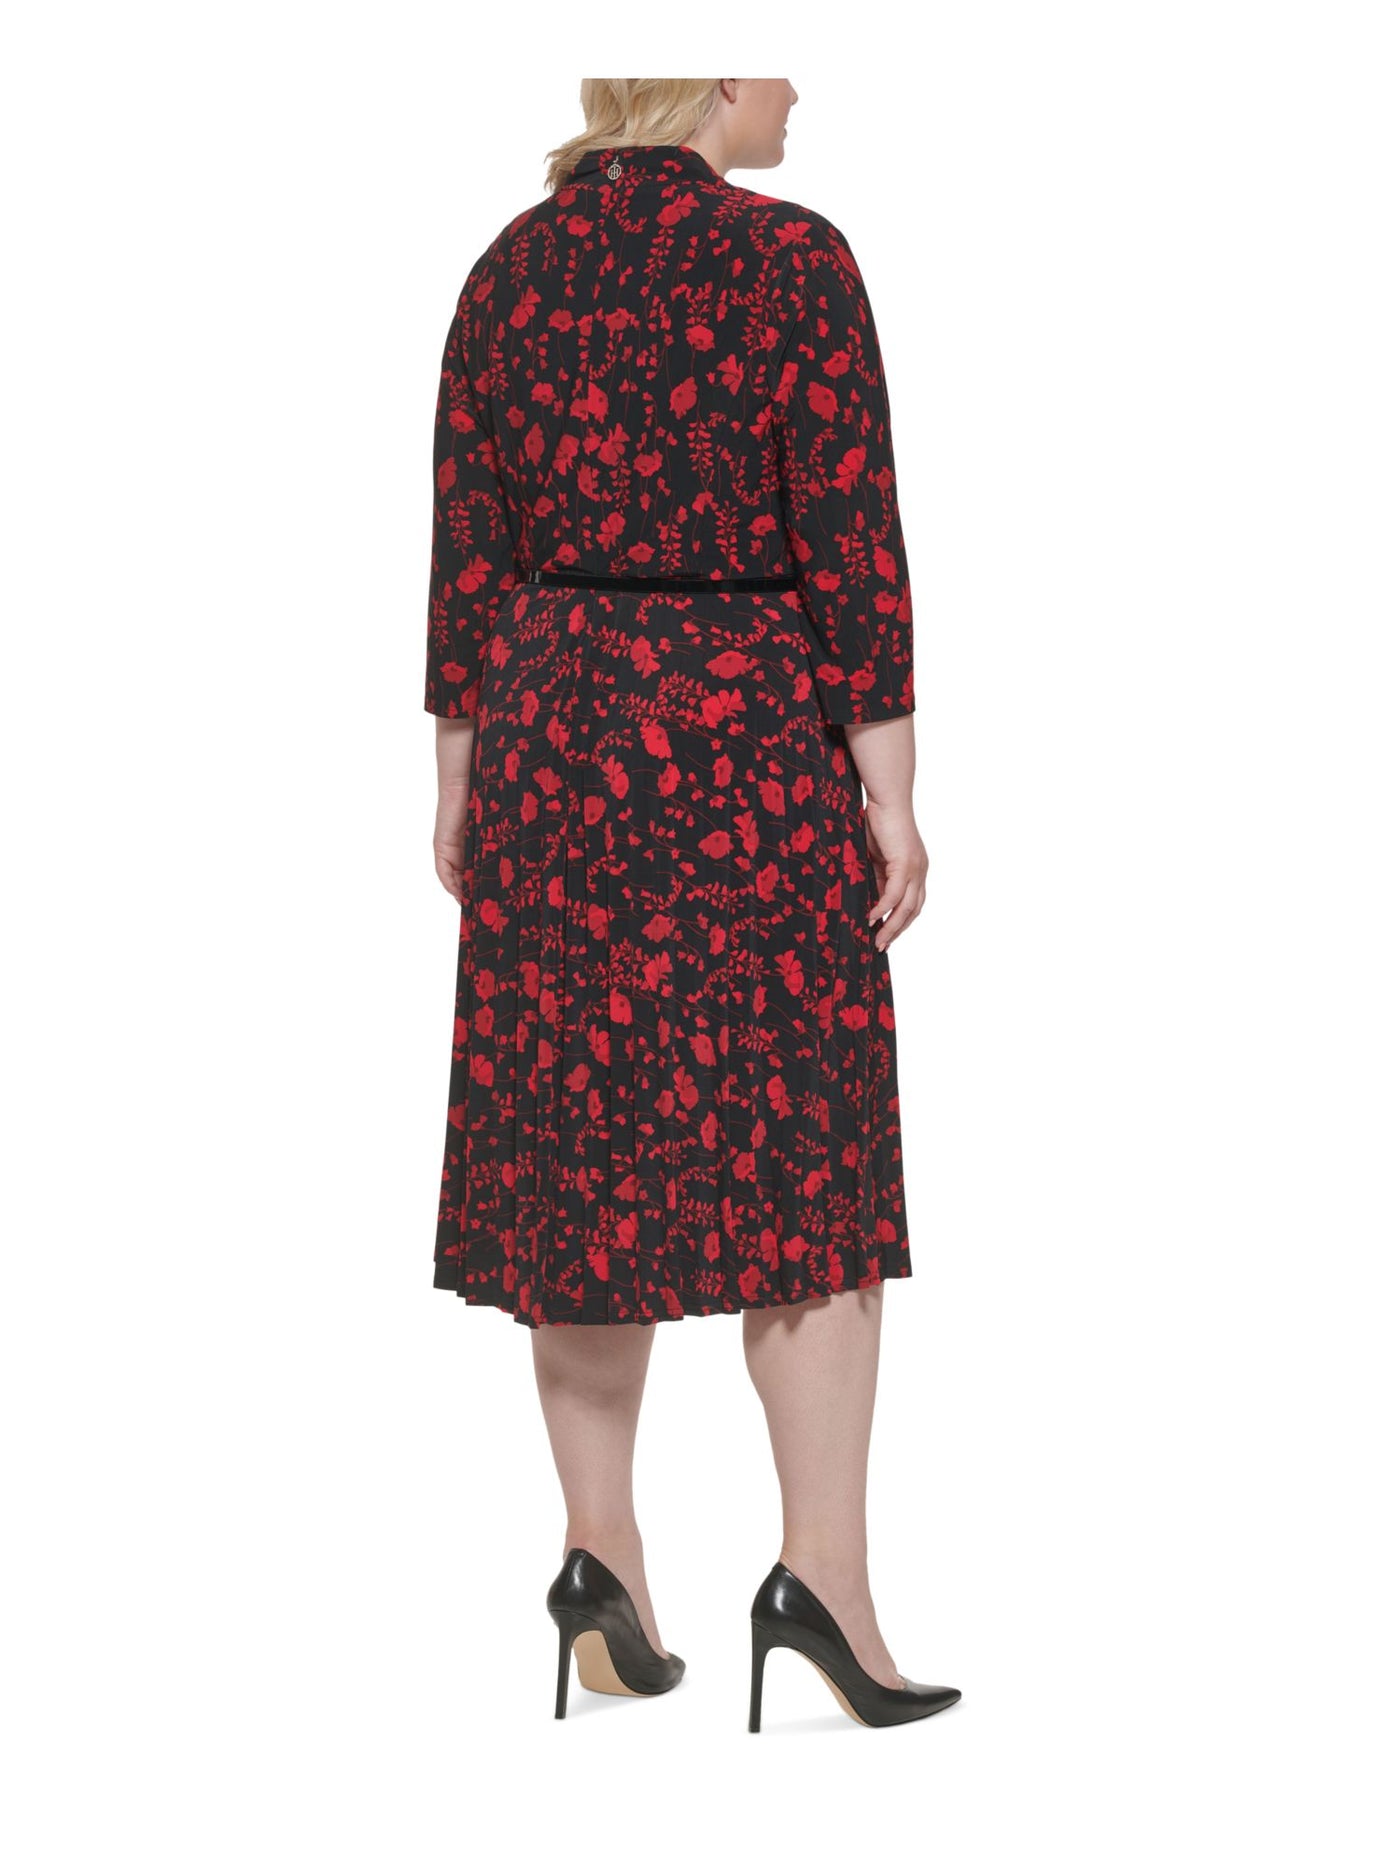 TOMMY HILFIGER Womens Black Belted Floral 3/4 Sleeve V Neck Below The Knee Shift Dress Plus 14W